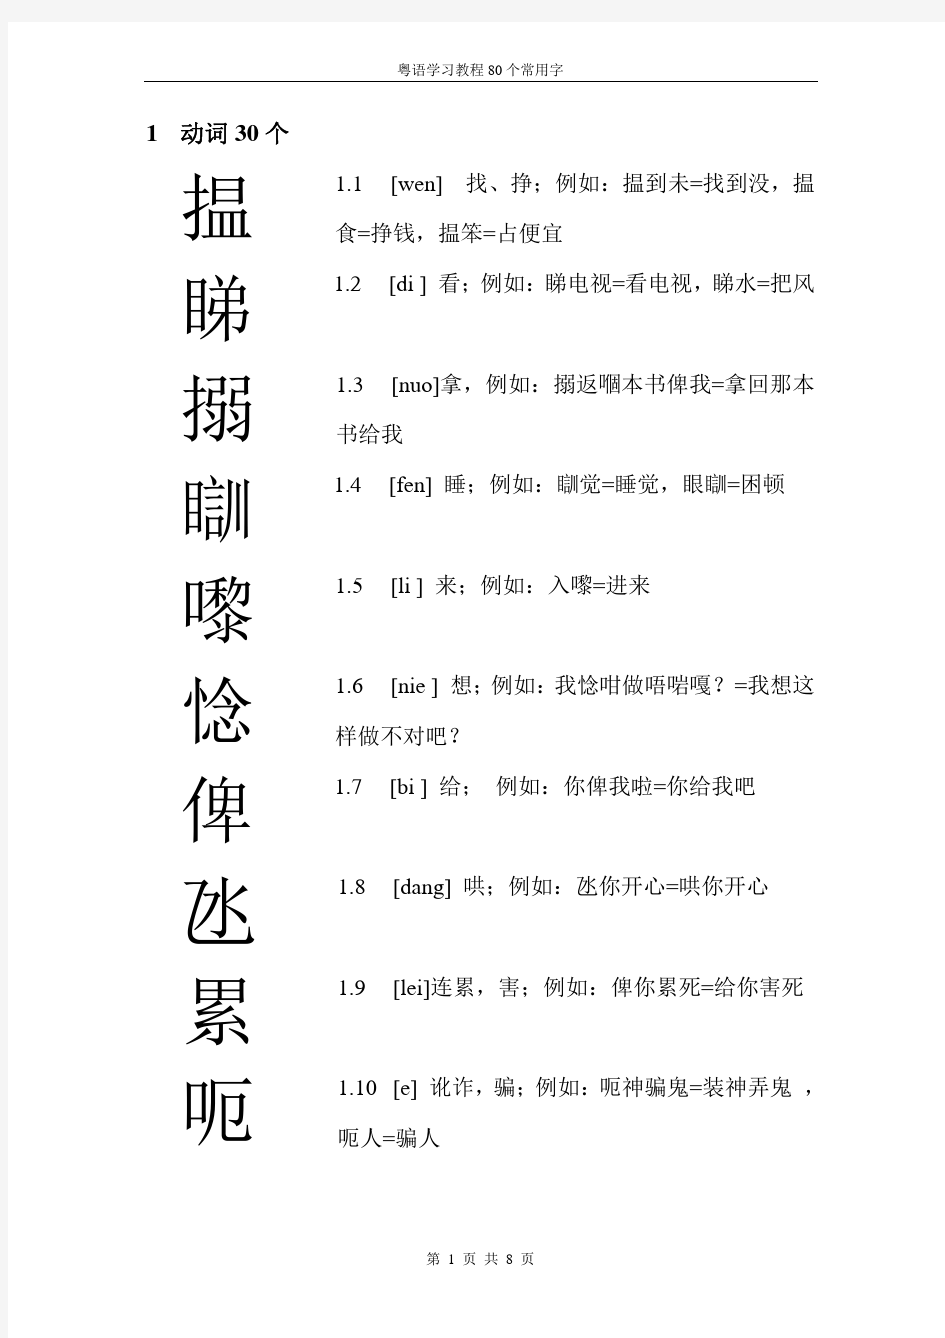 广东话80个常用字-打印版